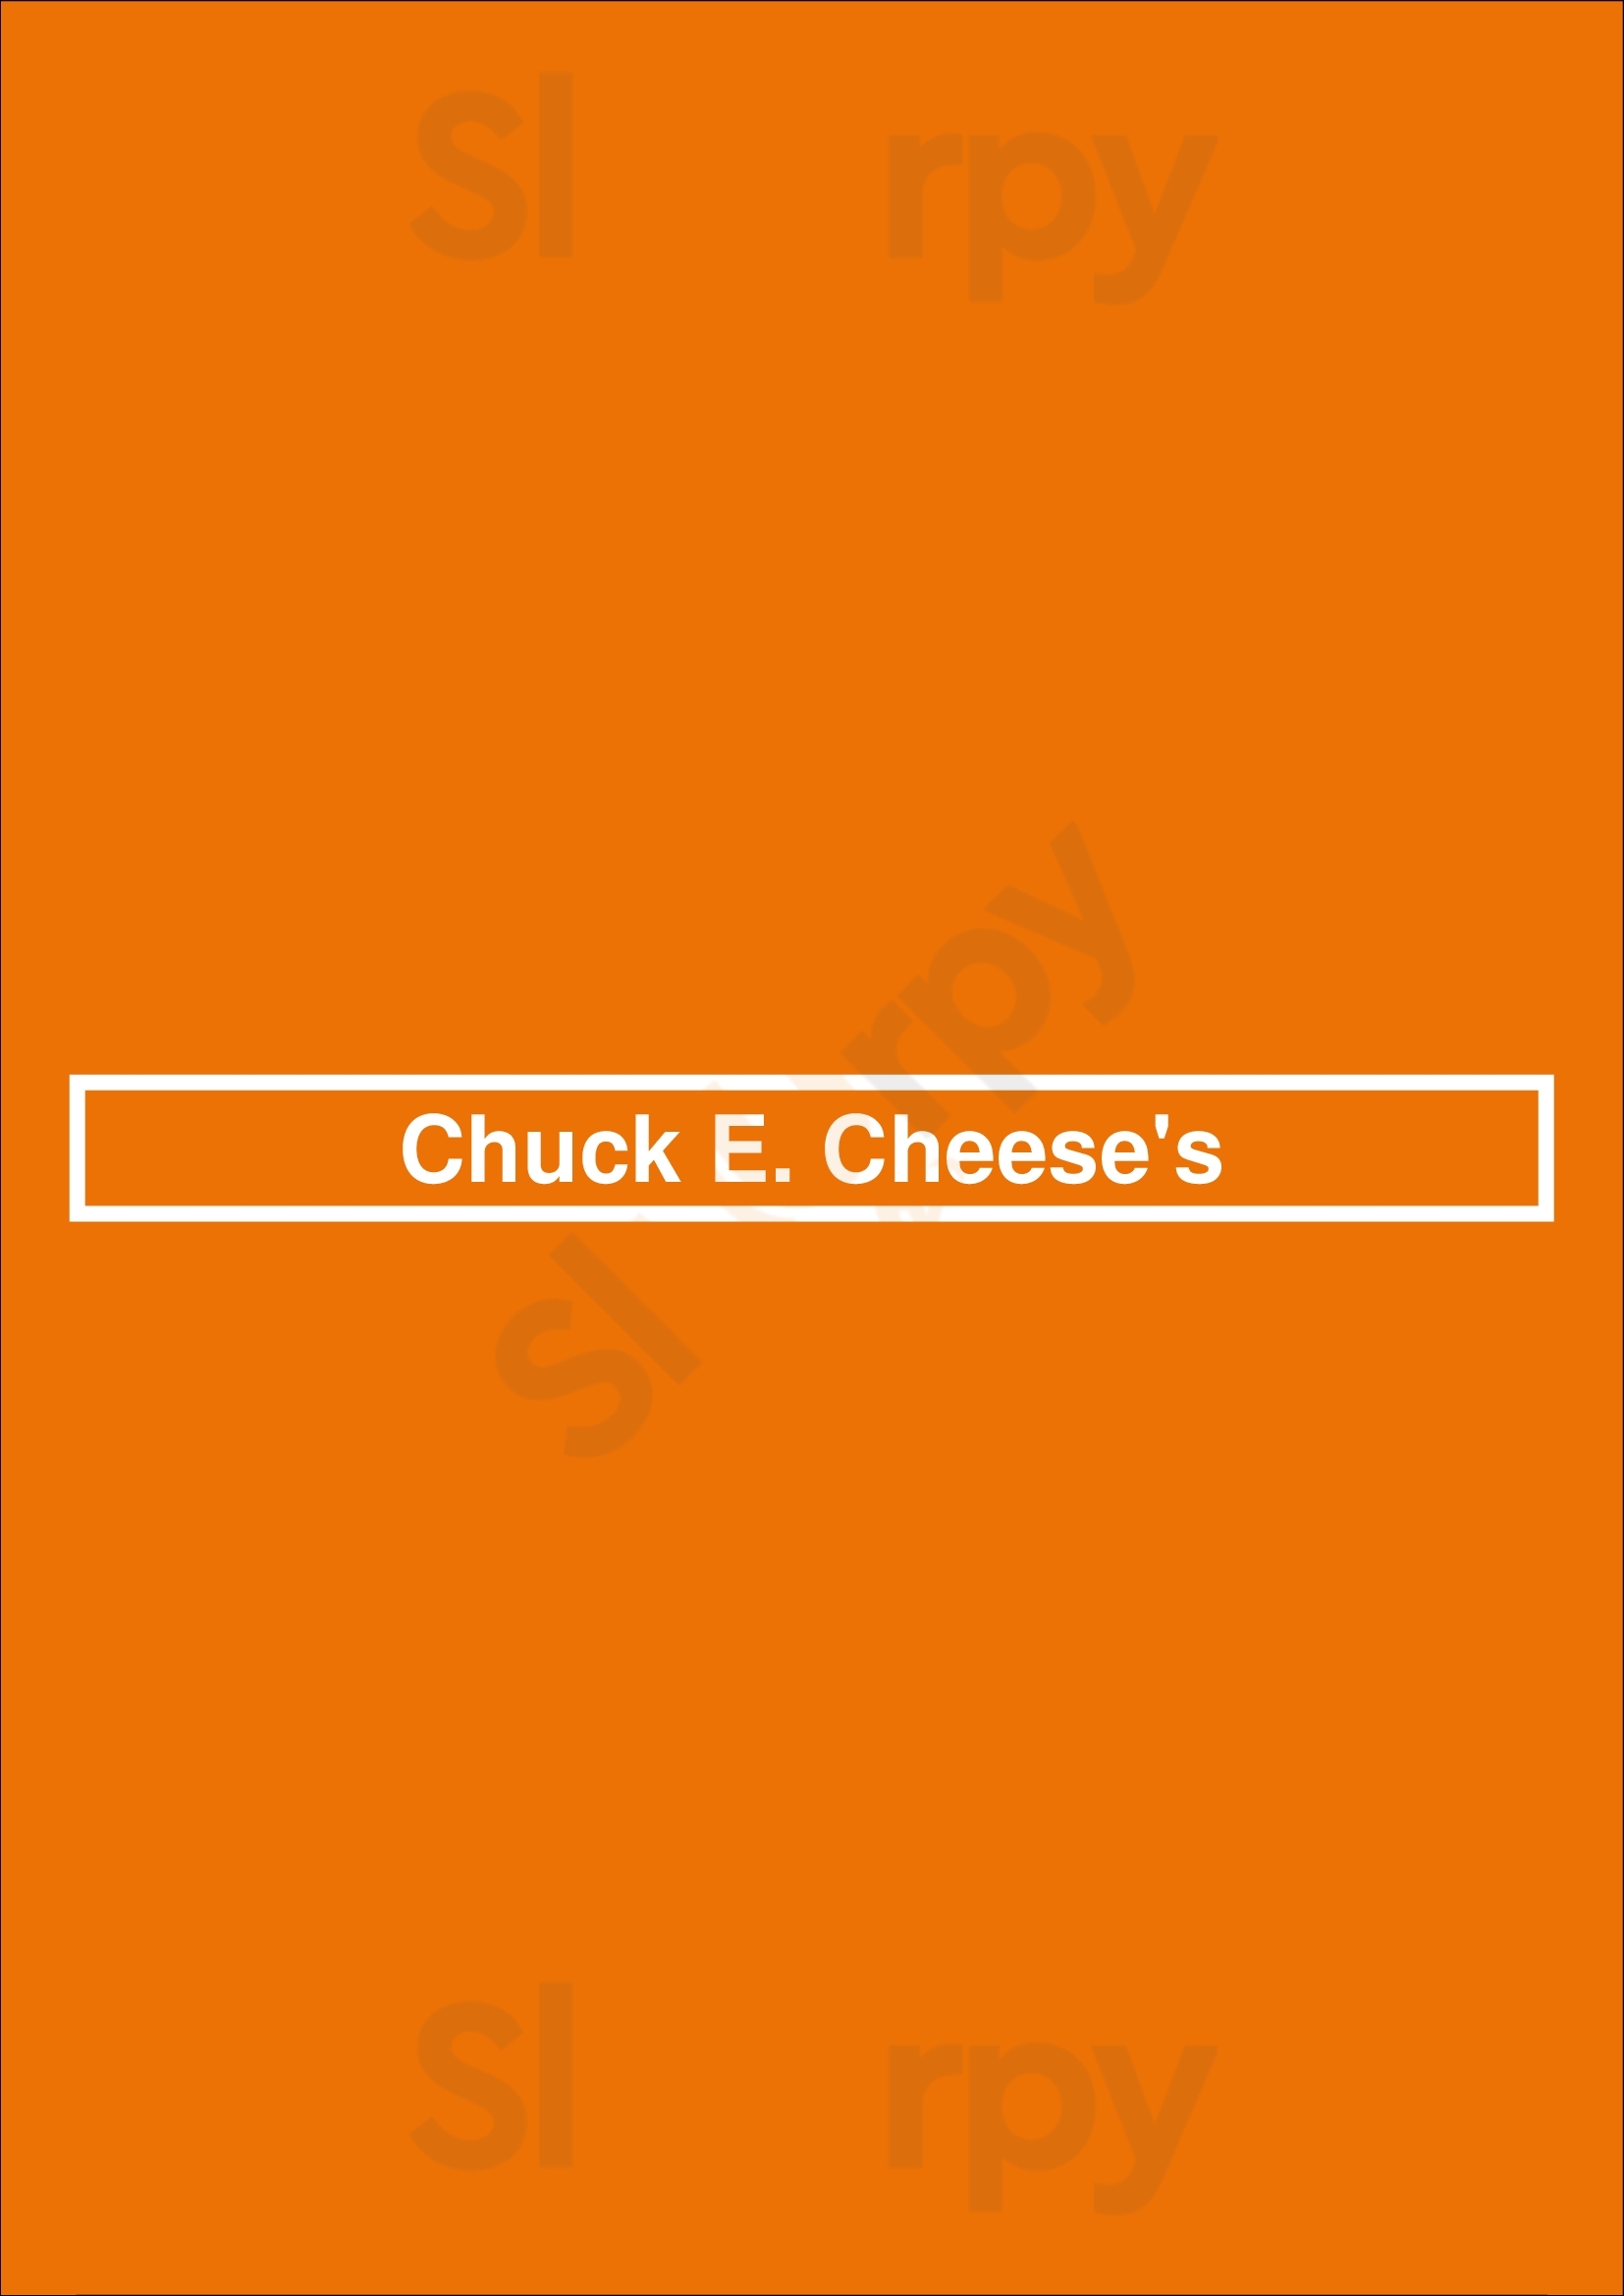 Chuck E. Cheese Birmingham Menu - 1